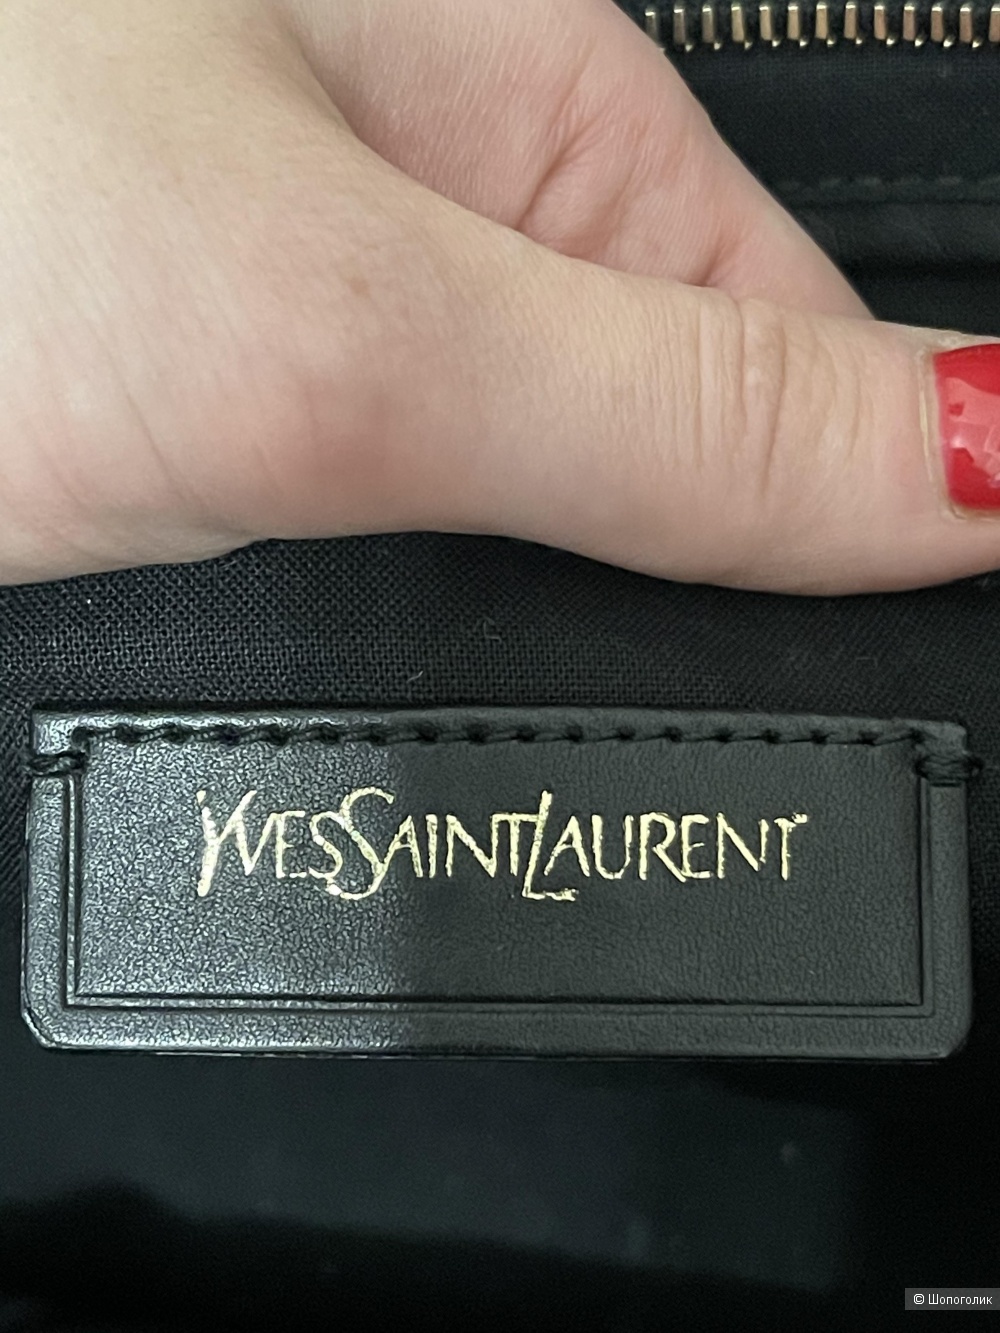 Сумка Yves Saint Laurent размер 35 на 25 см